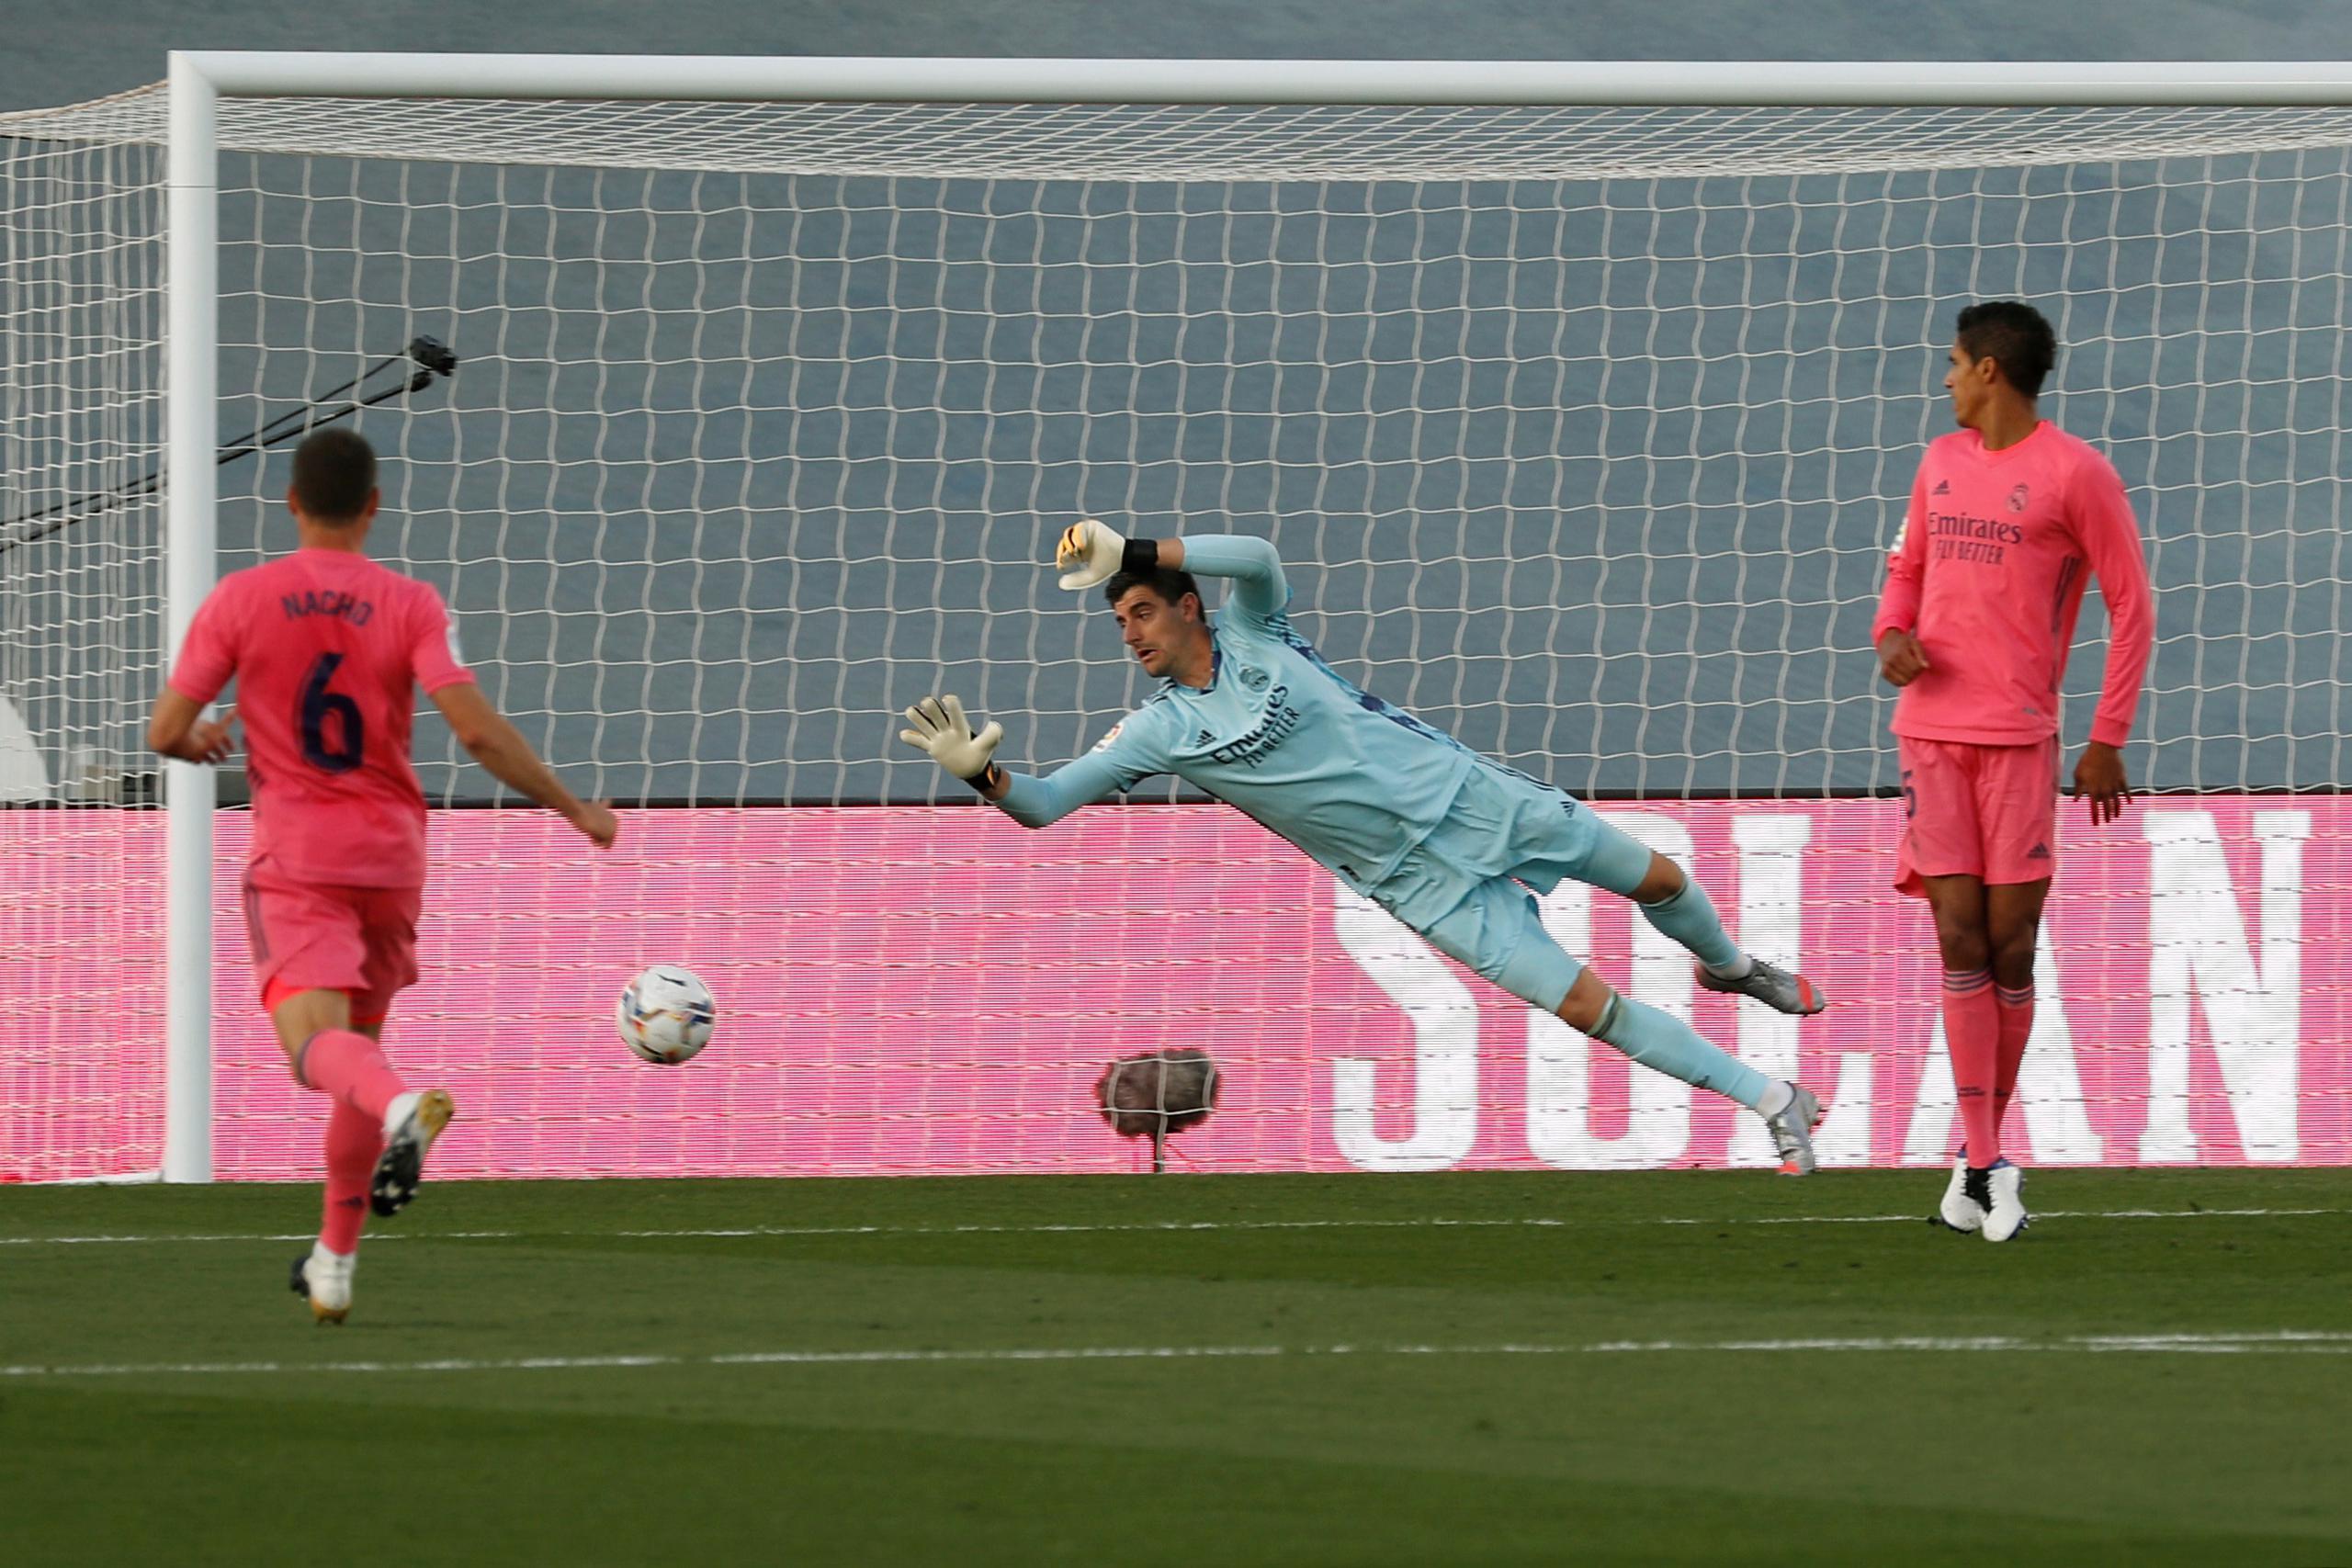 El portero del Real Madrid, Courtois, trata de detener el lanzamiento de Lozano durante el partido de La Liga el sábado.